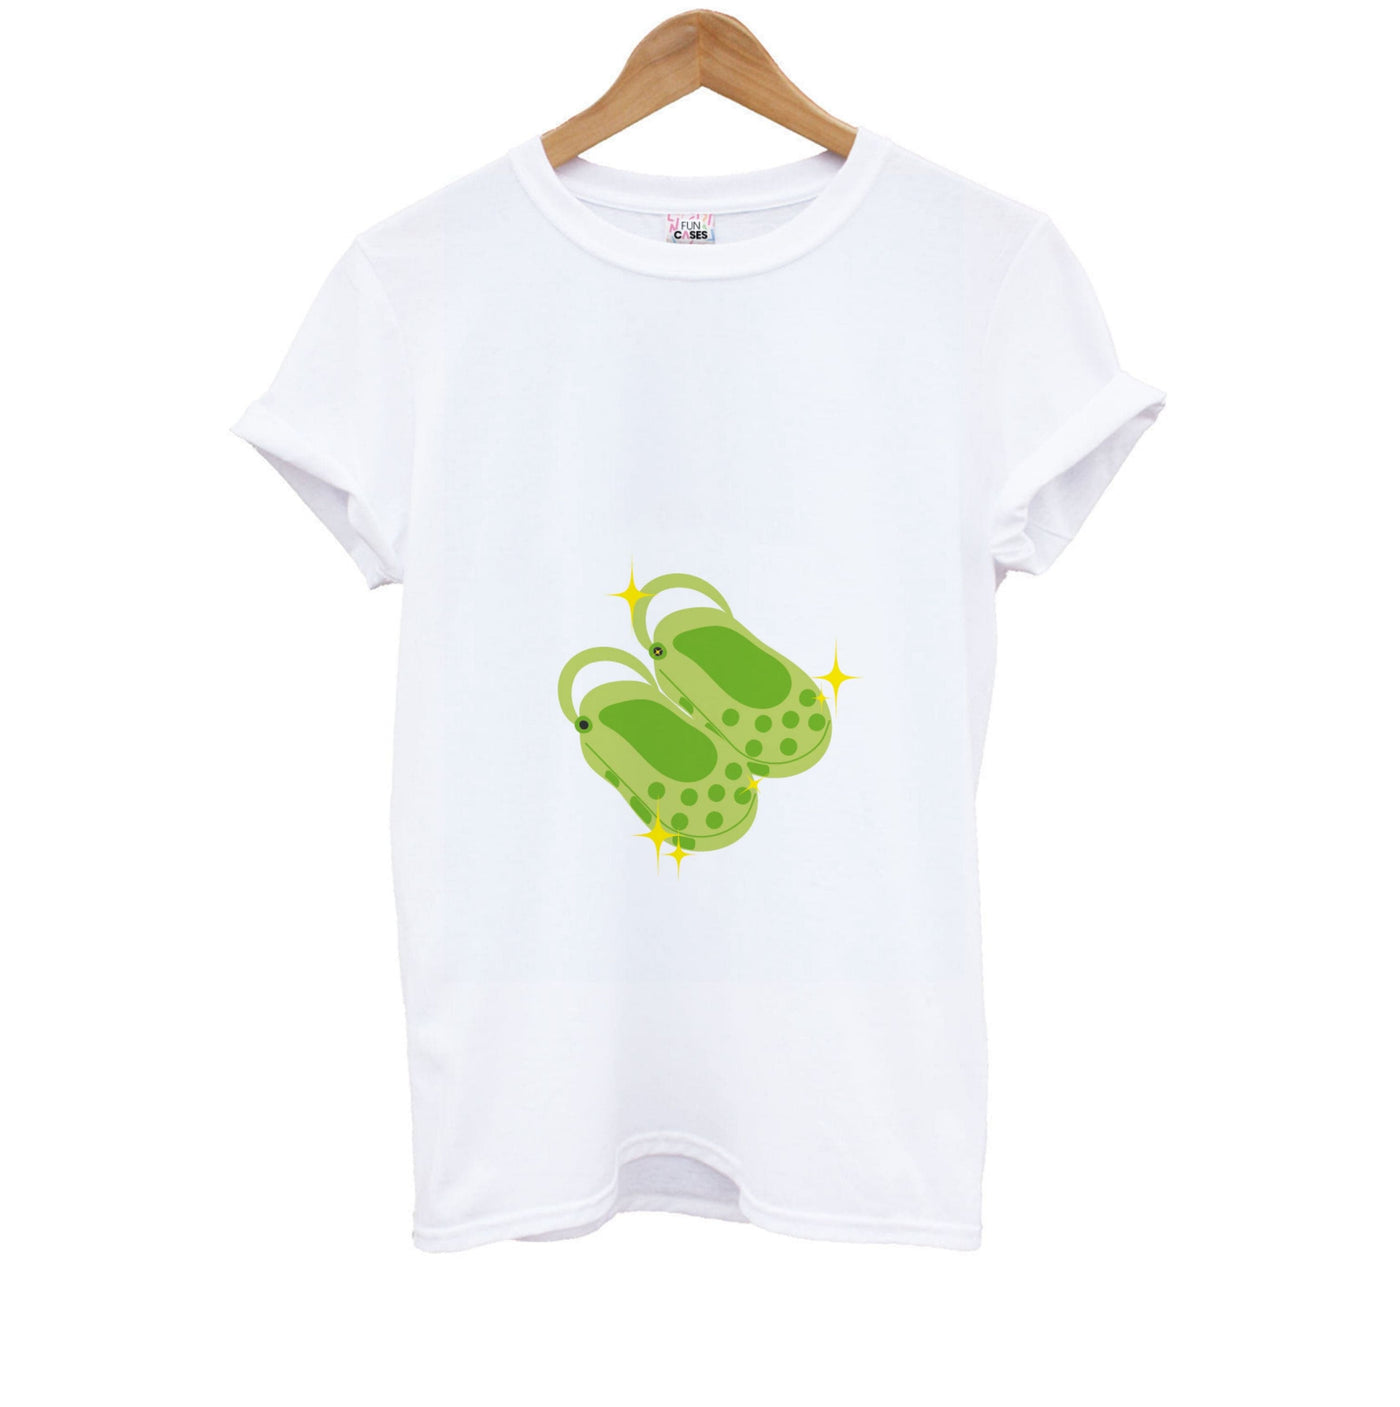 Green Crocs Kids T-Shirt